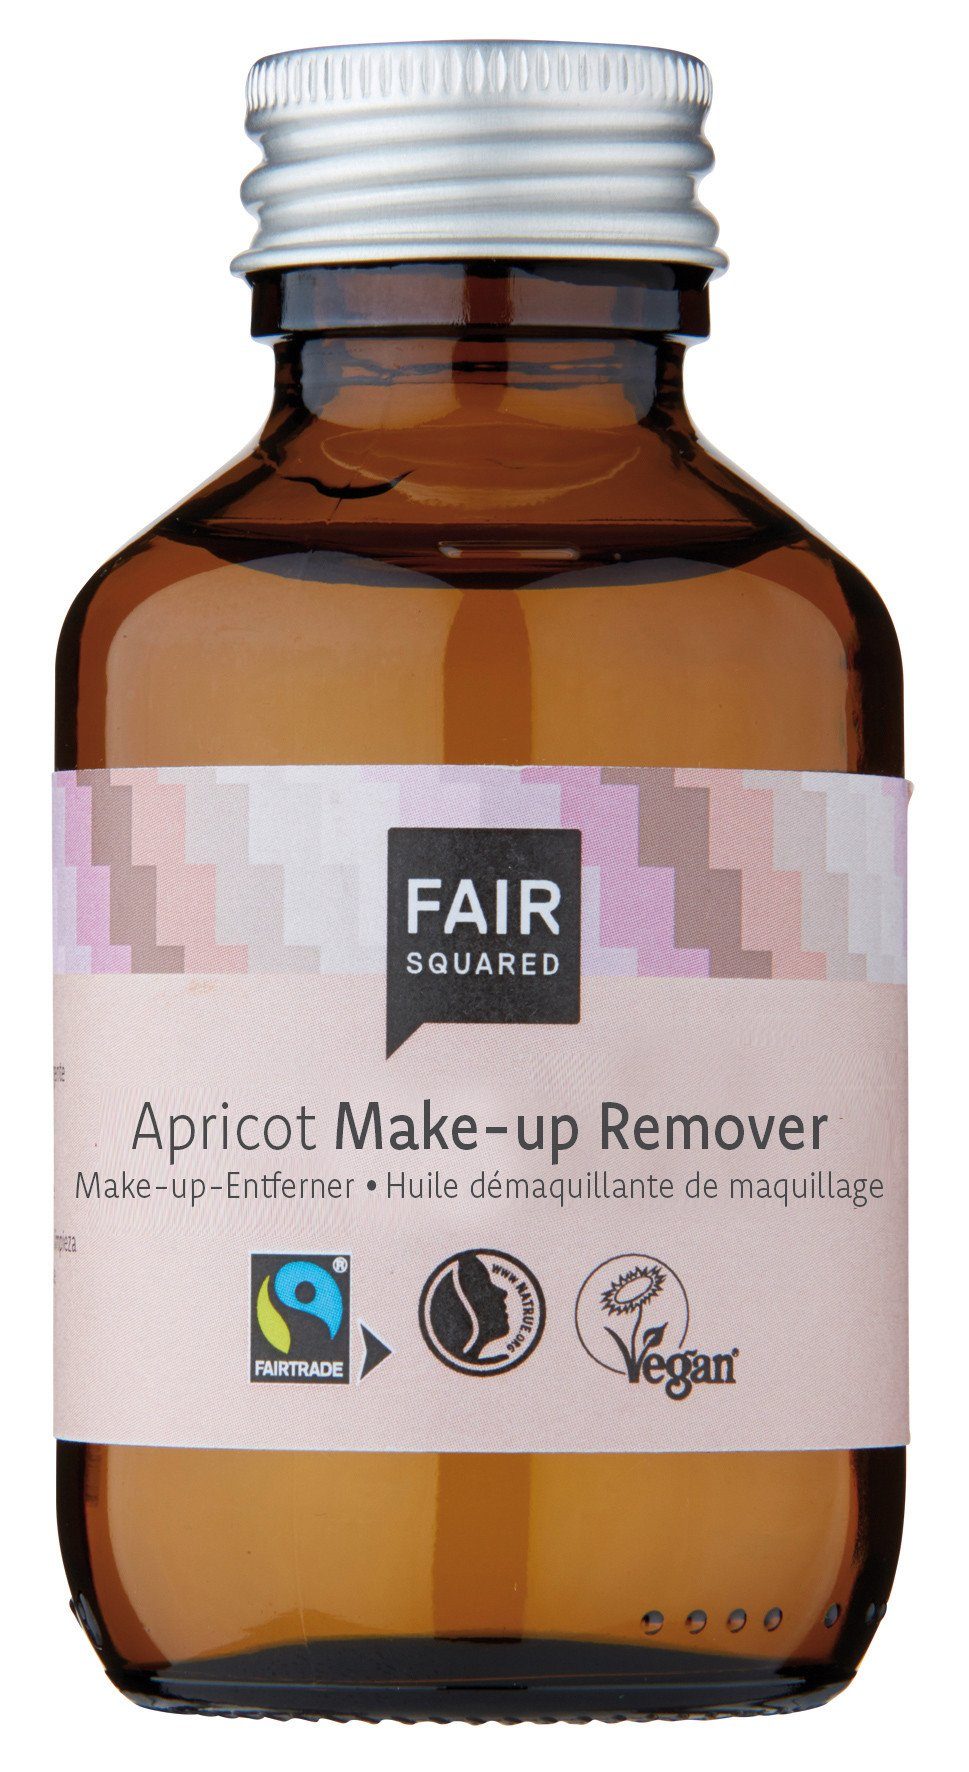 Fair Squared Make-up-Entferner FAIR SQUARED Make-Up Entferner mit fair gehandelten Inhaltsstoffen - Zero Waste - 100 ml, 1-tlg., Reinigt die Haut sanft ohne Austrocknen.